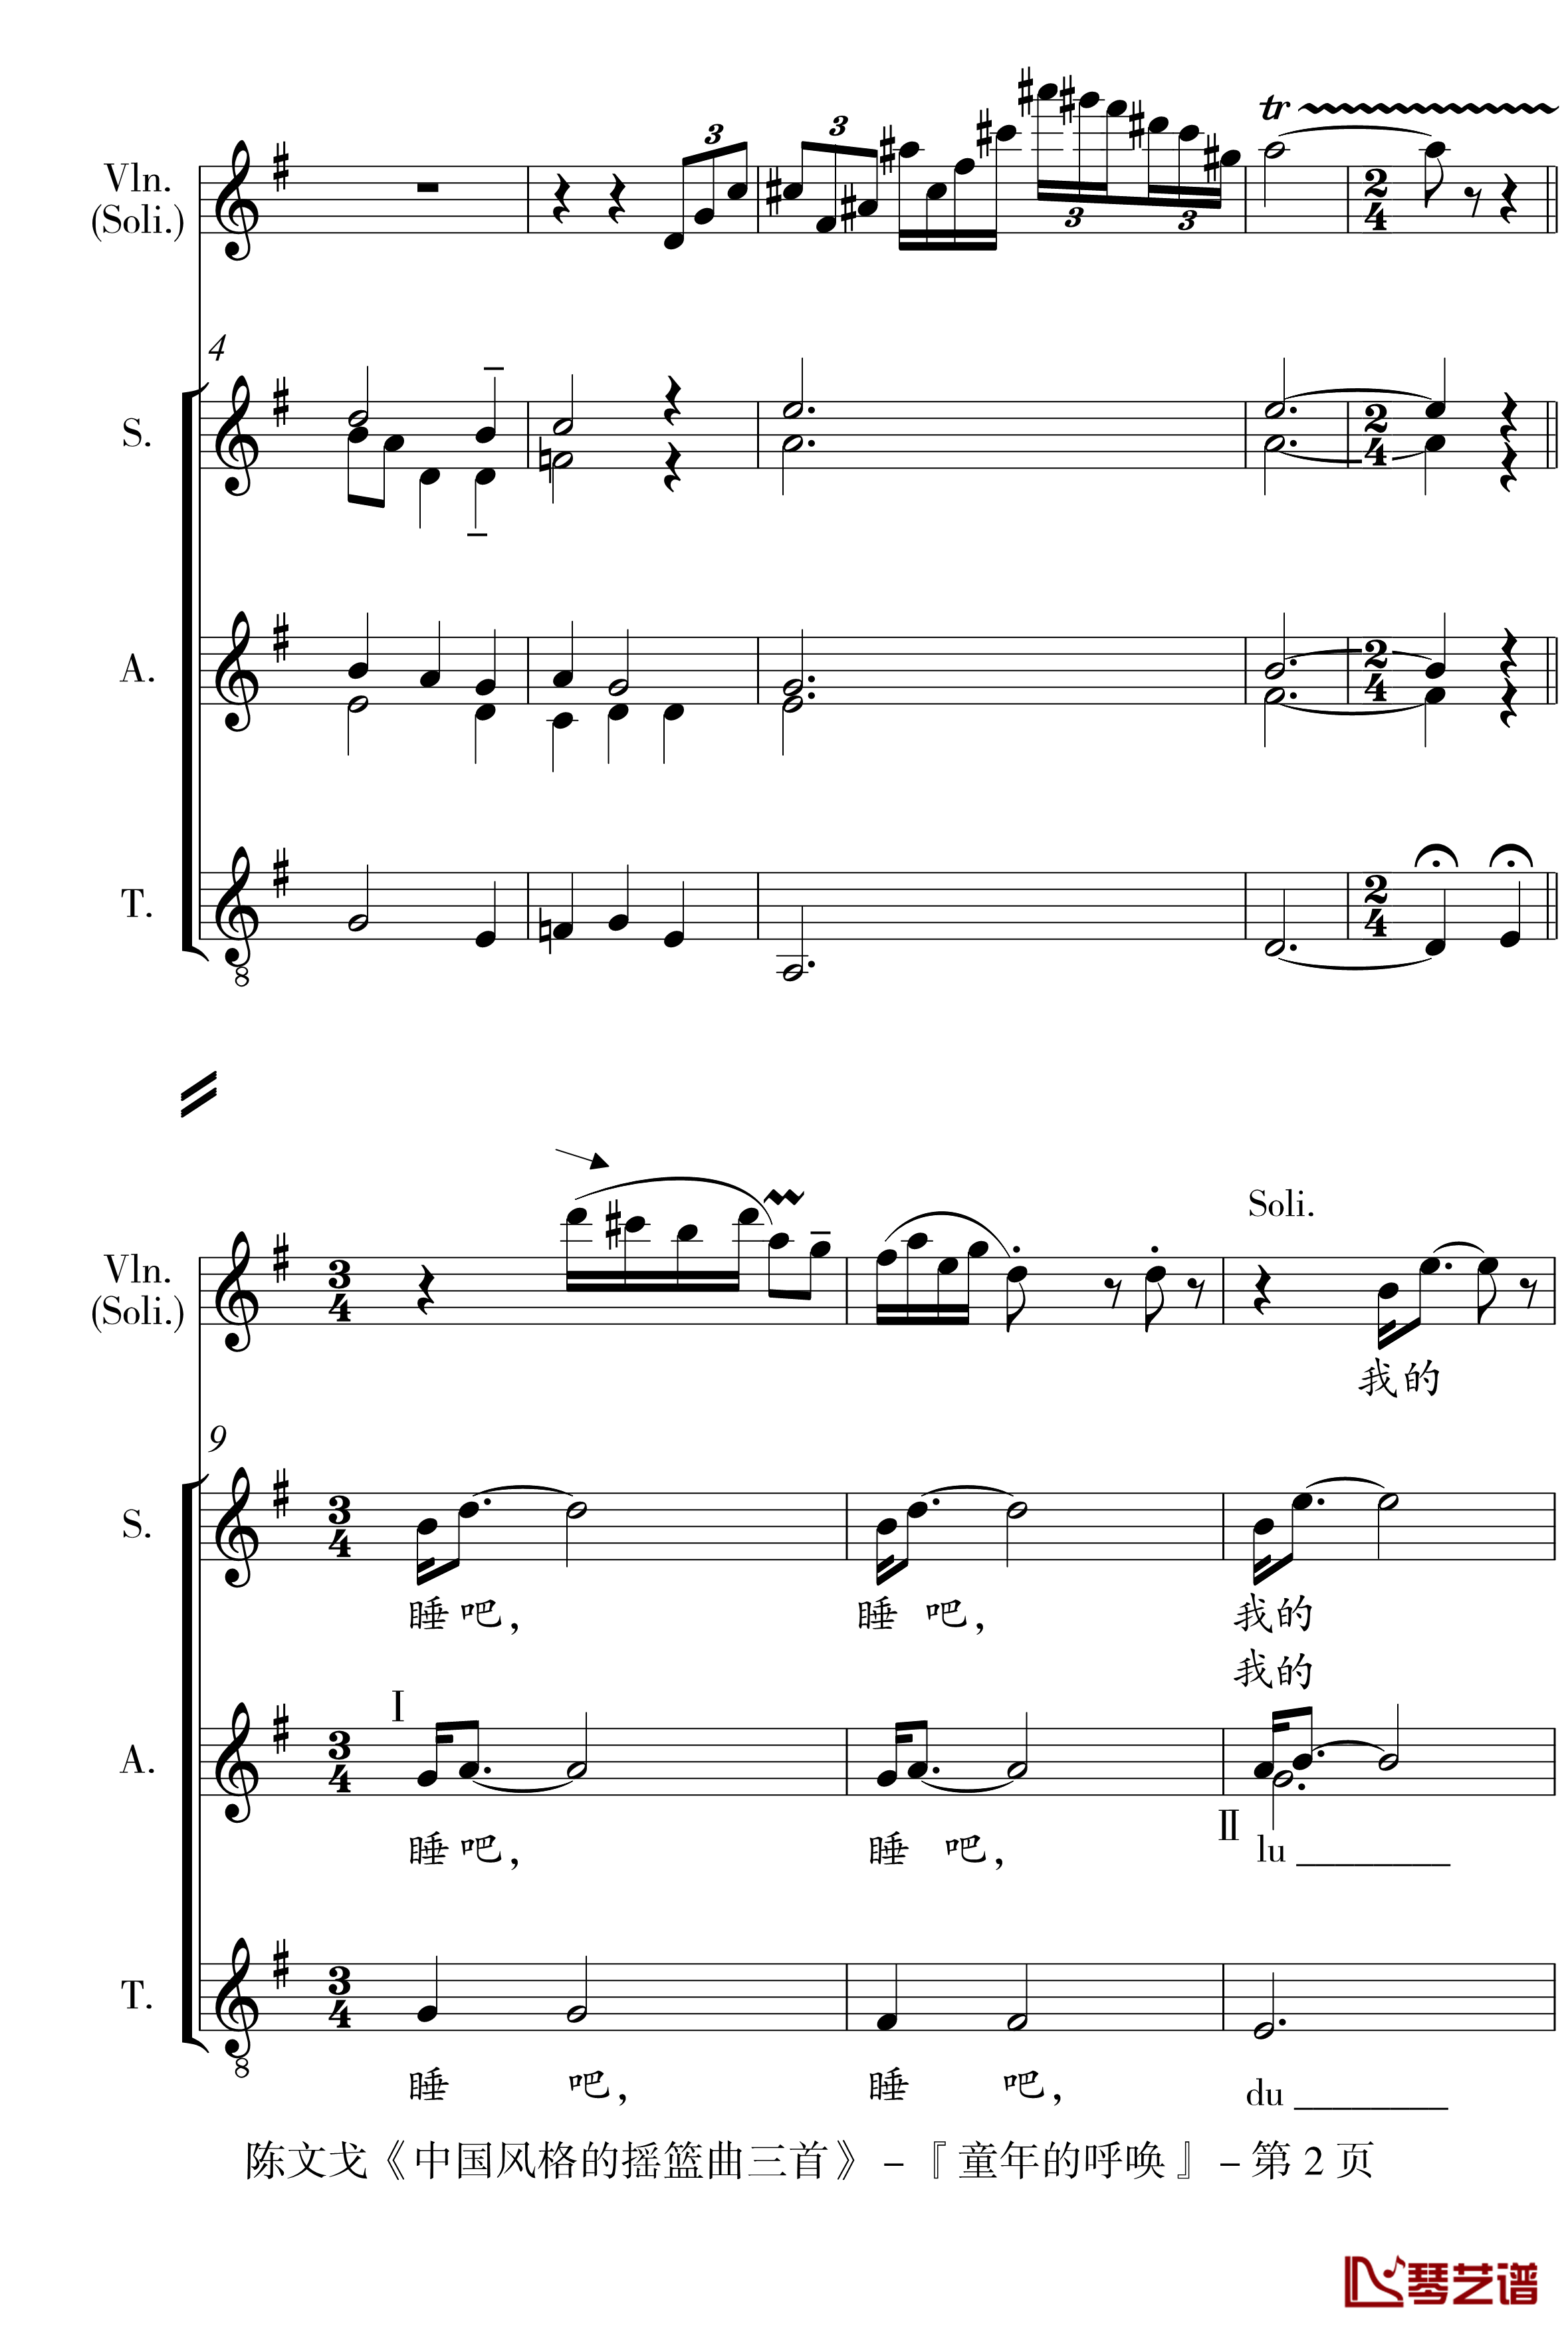 中国风格的合唱摇篮曲三首钢琴谱-I, II, III-陈文戈2